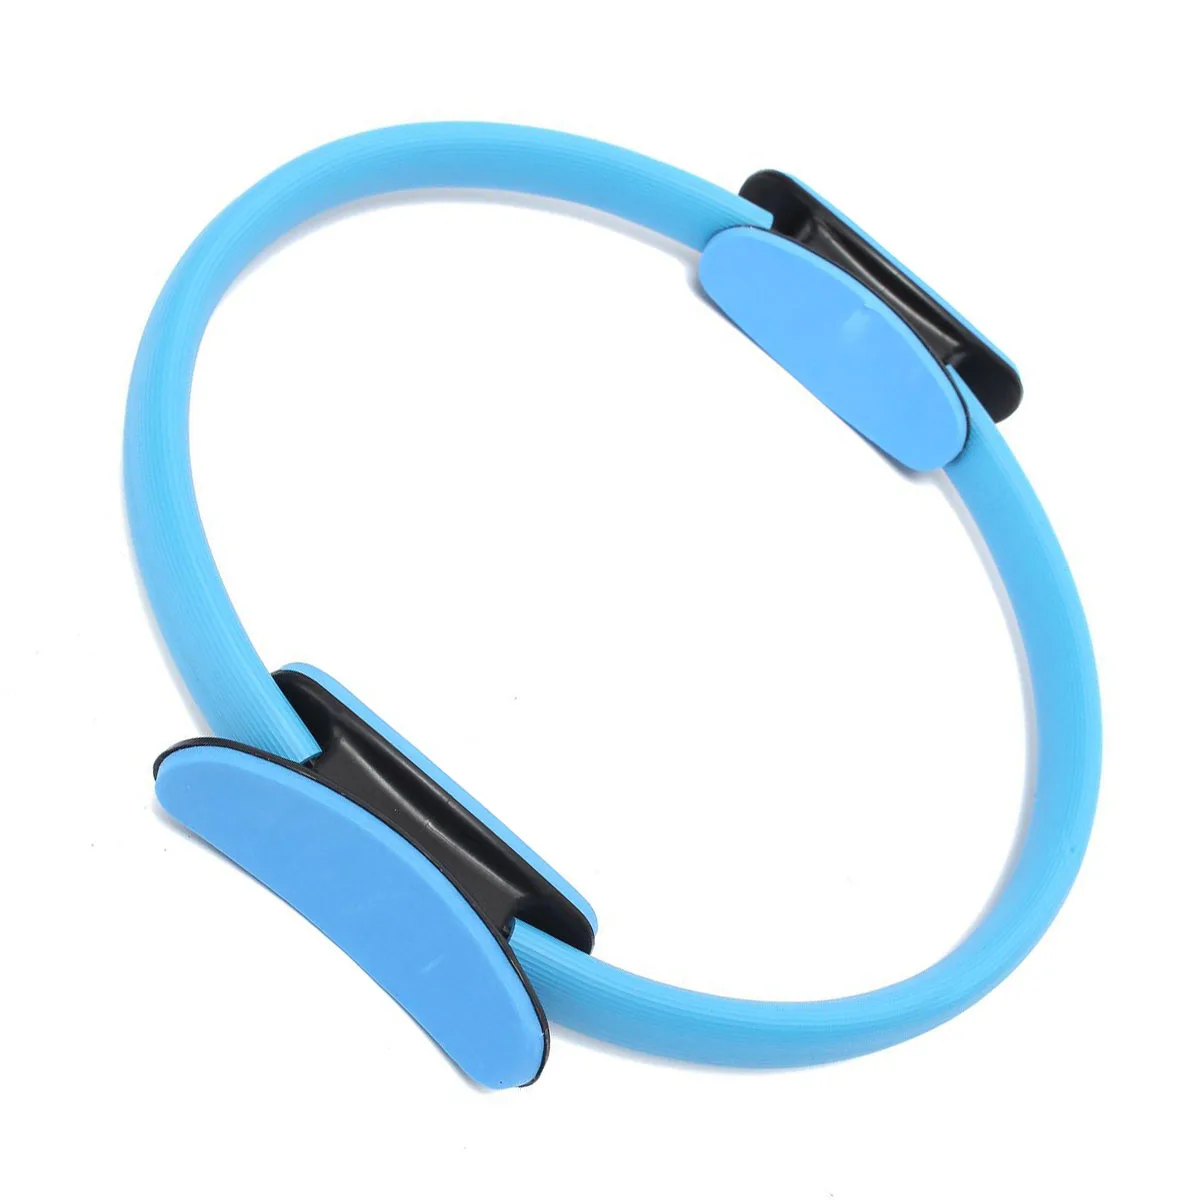 SZ-lgfm-Пилатес кольцо круг упражнения с сопротивлением для тренировок в фитнес-зале кольцо для йоги двухдиапазонный синий